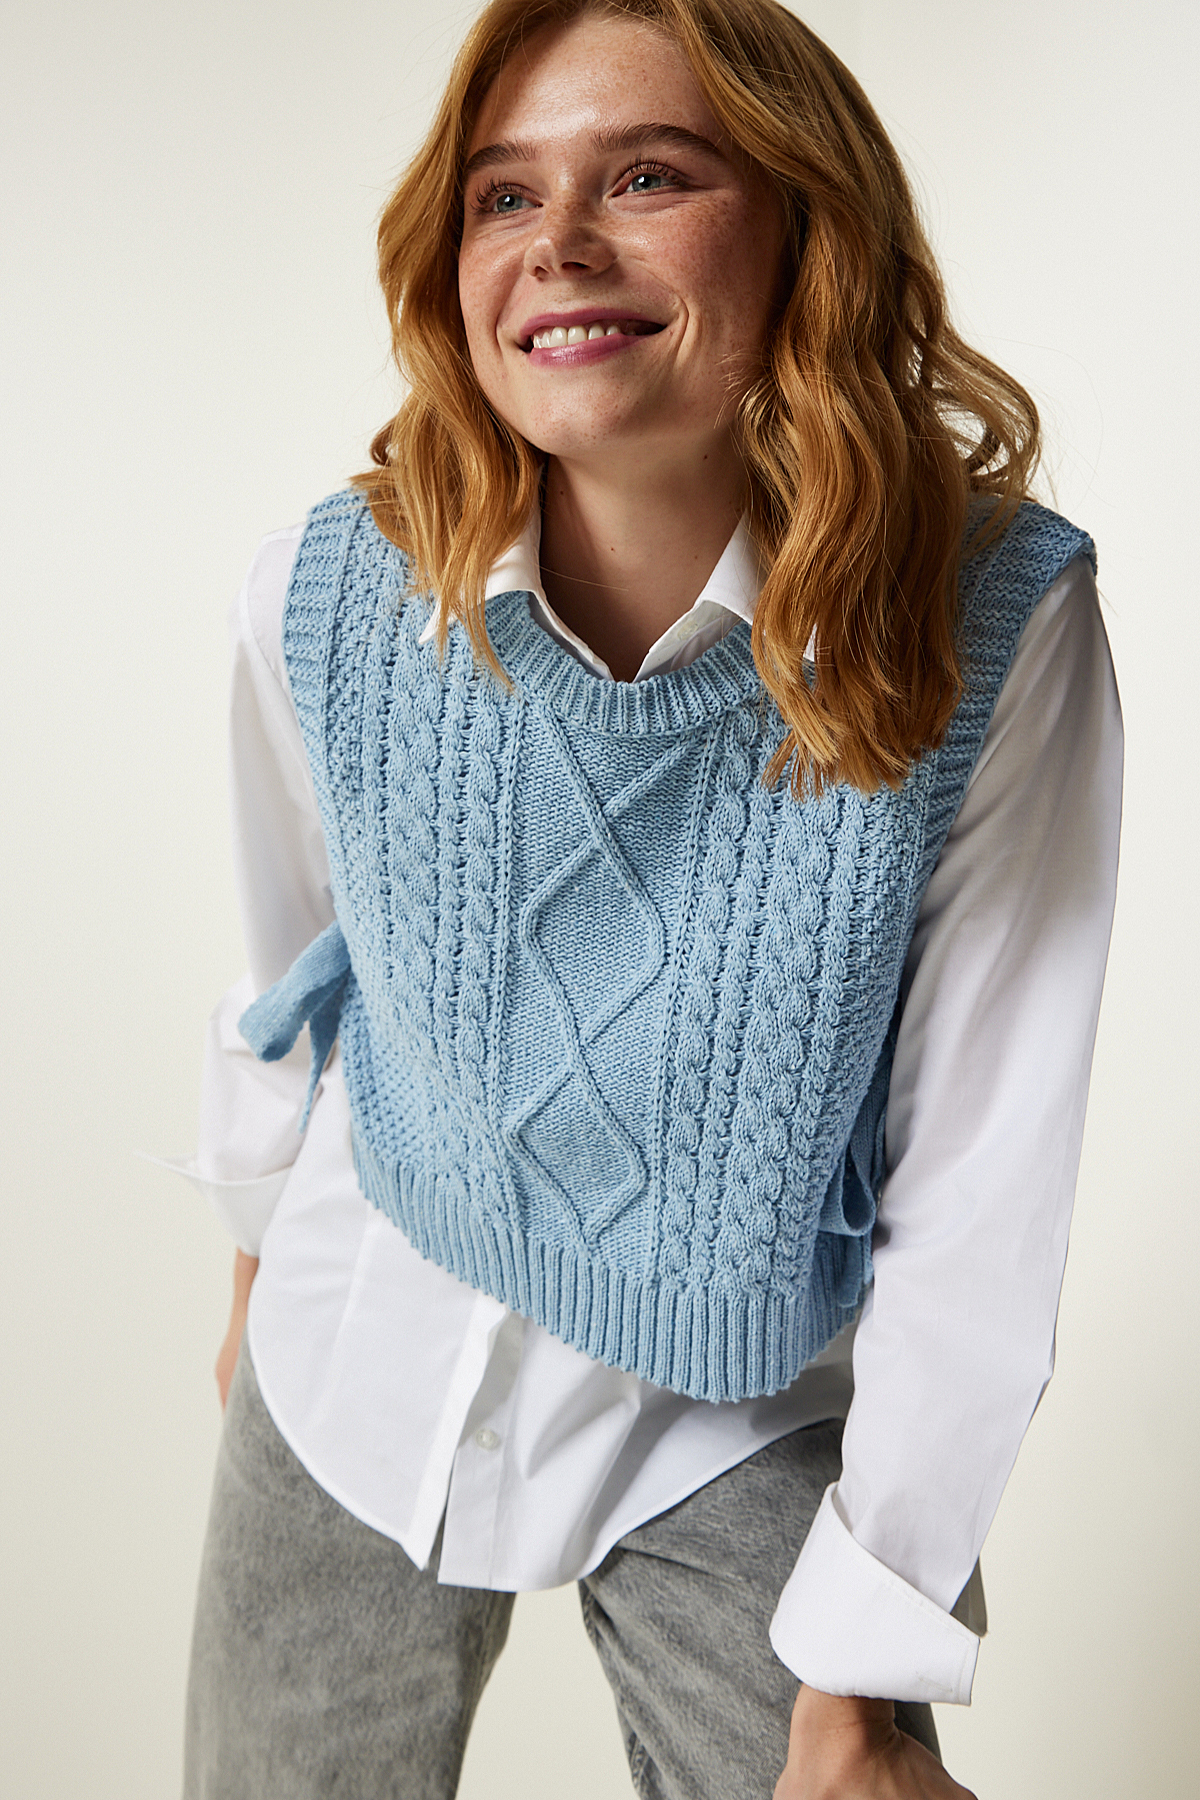 Levně Happiness İstanbul Women's Sky Blue Motif Tie Crop Knitwear Sweater